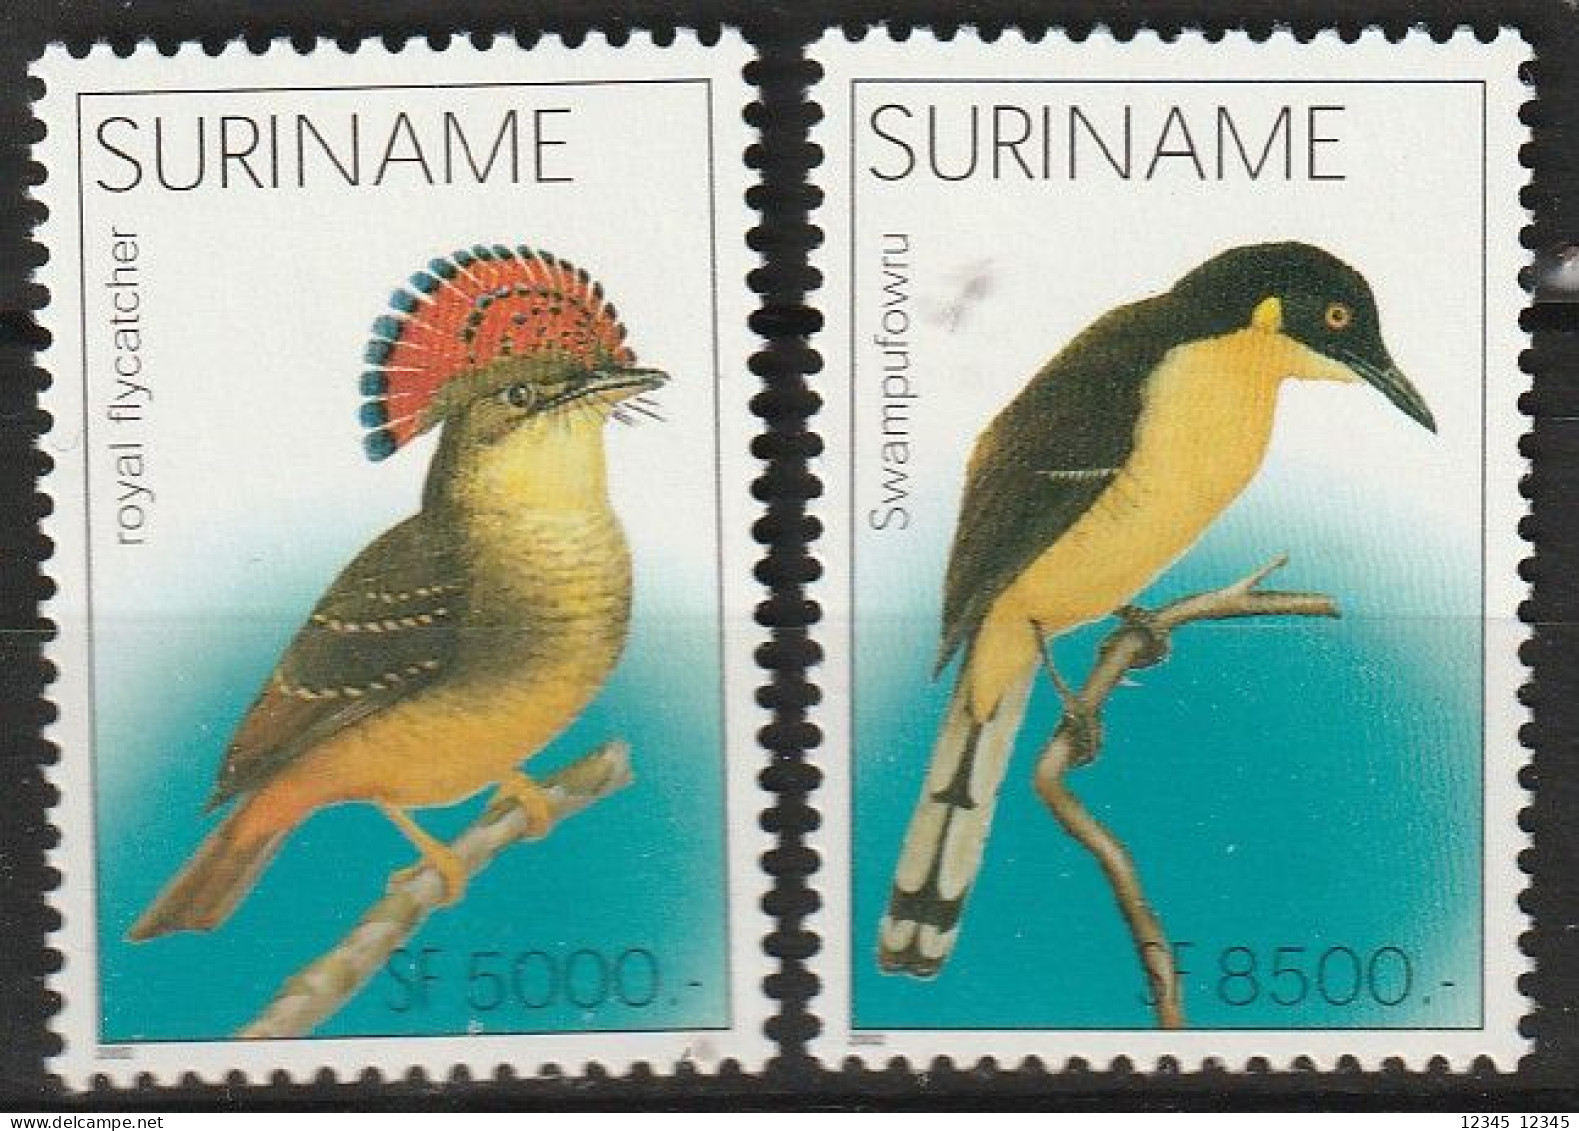 Suriname 2002, Postfris MNH, Birds - Surinam